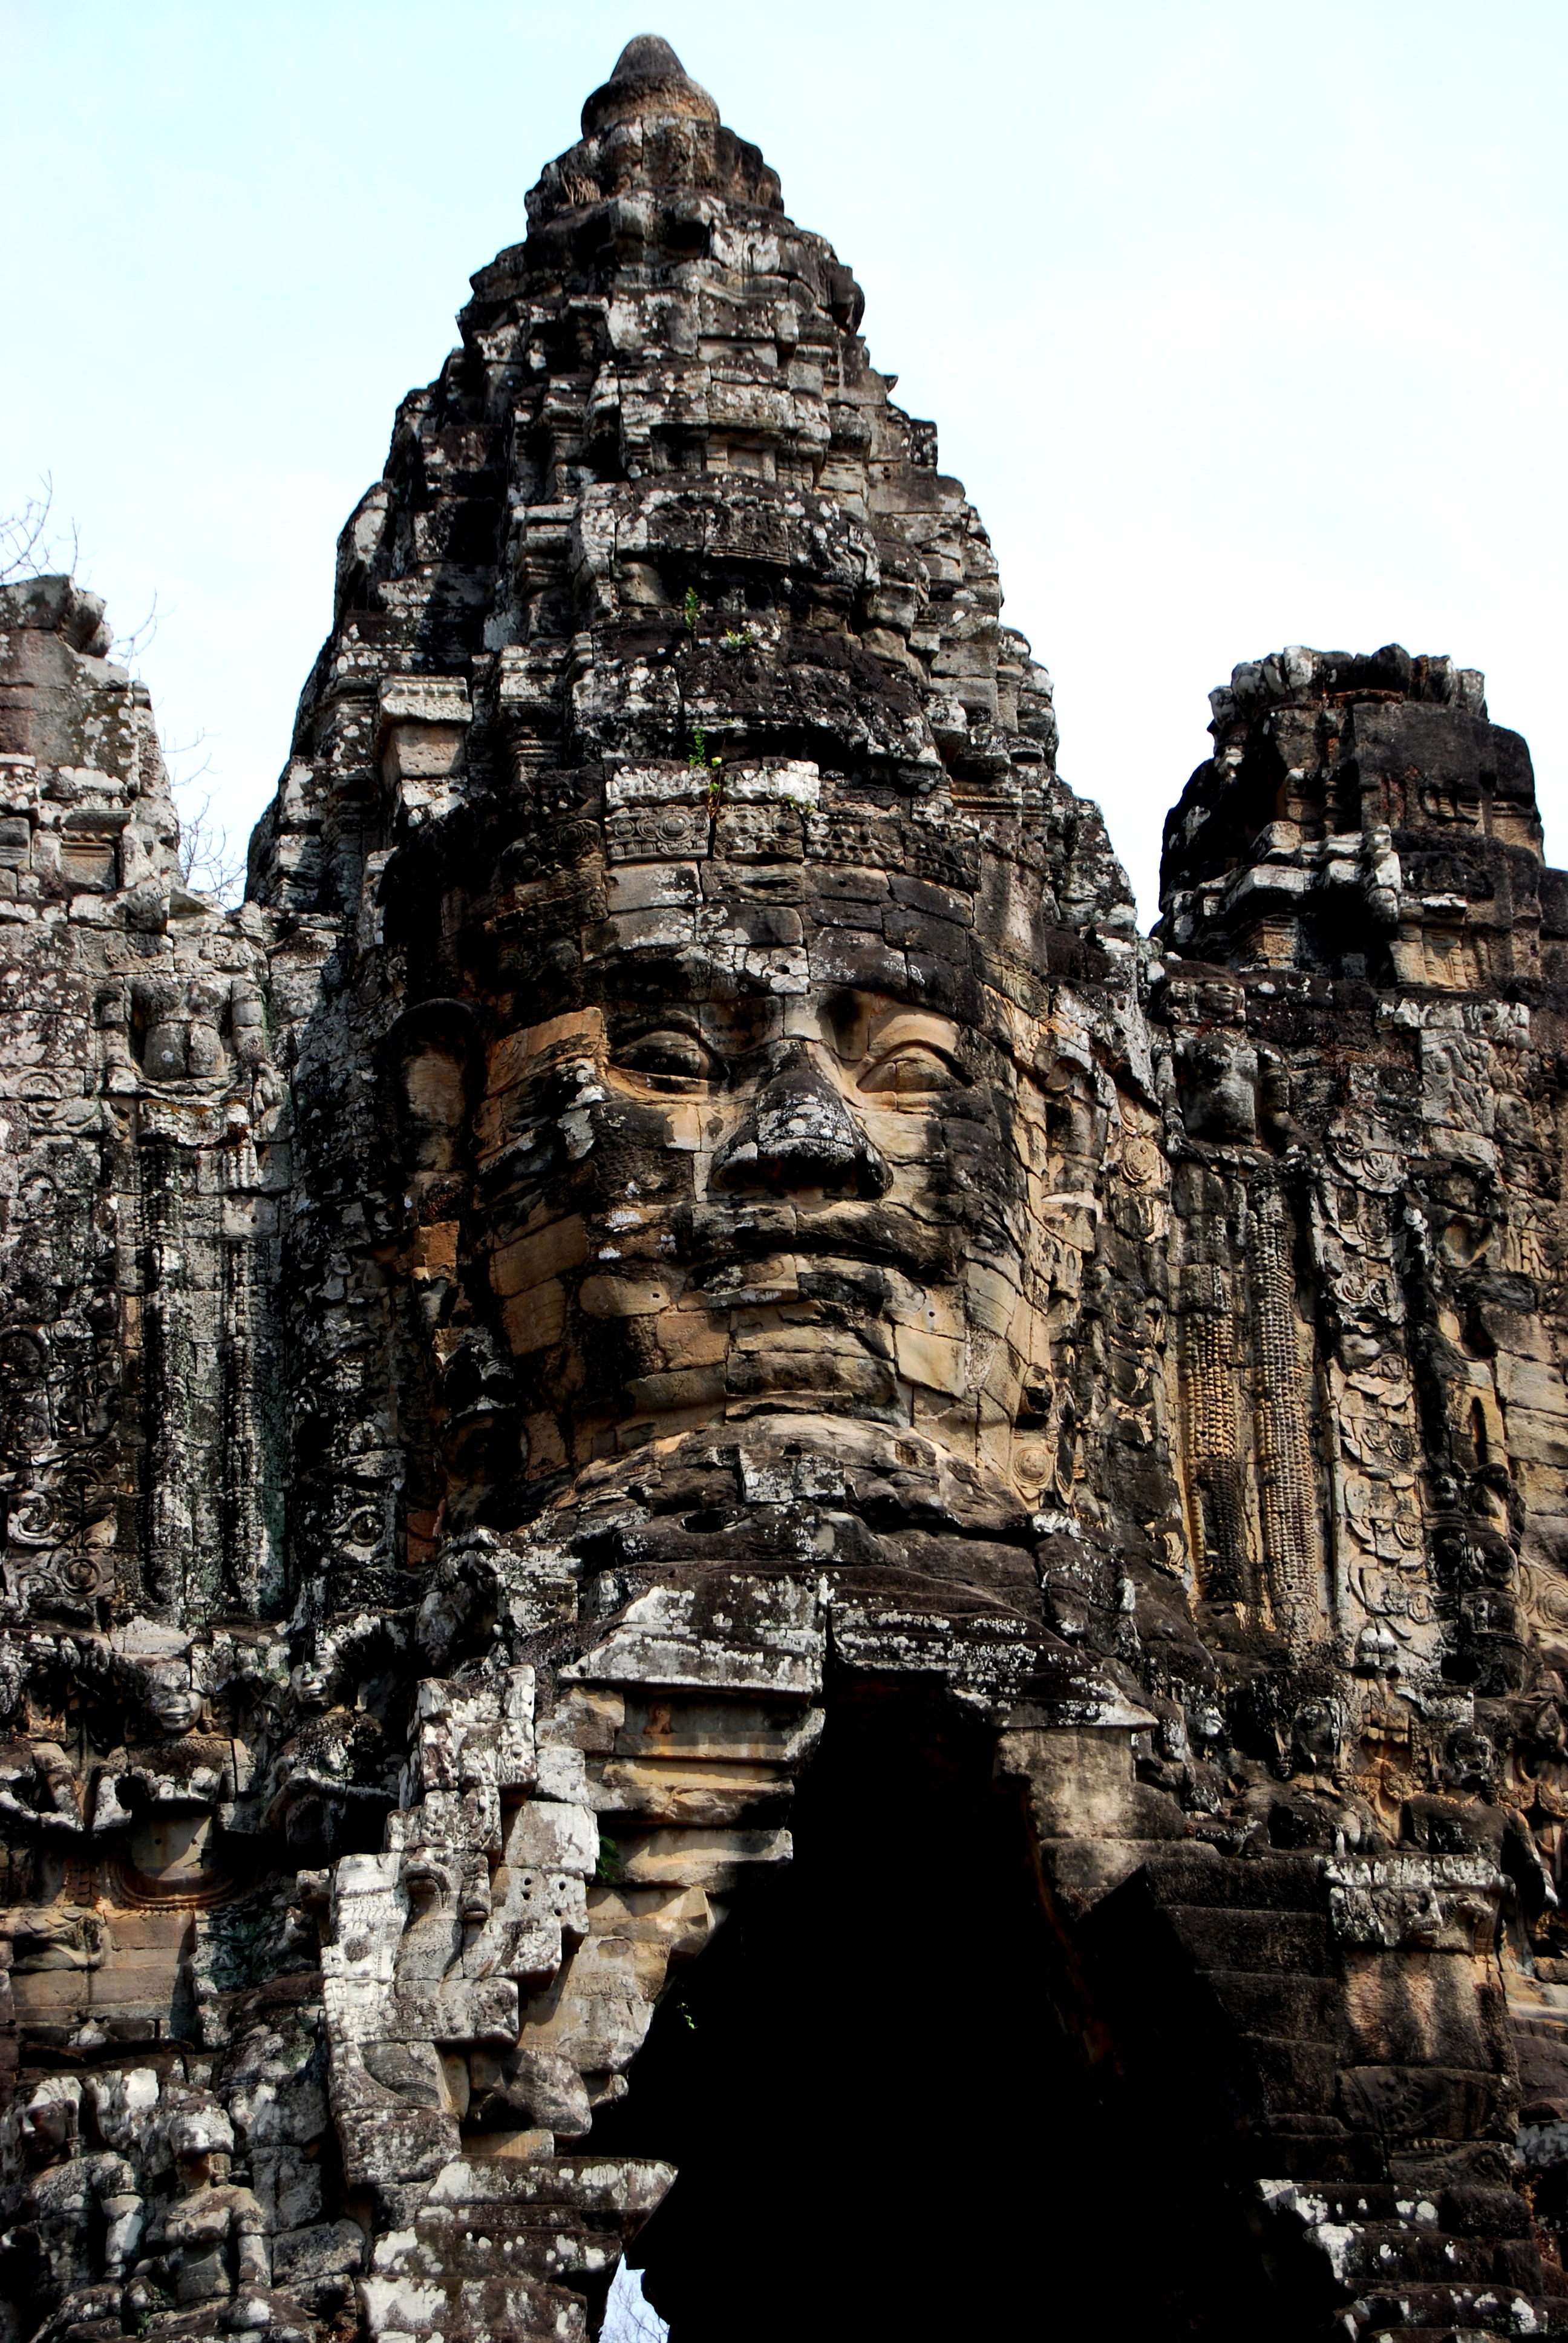 The Grandiose Entrances to Angkor Thom